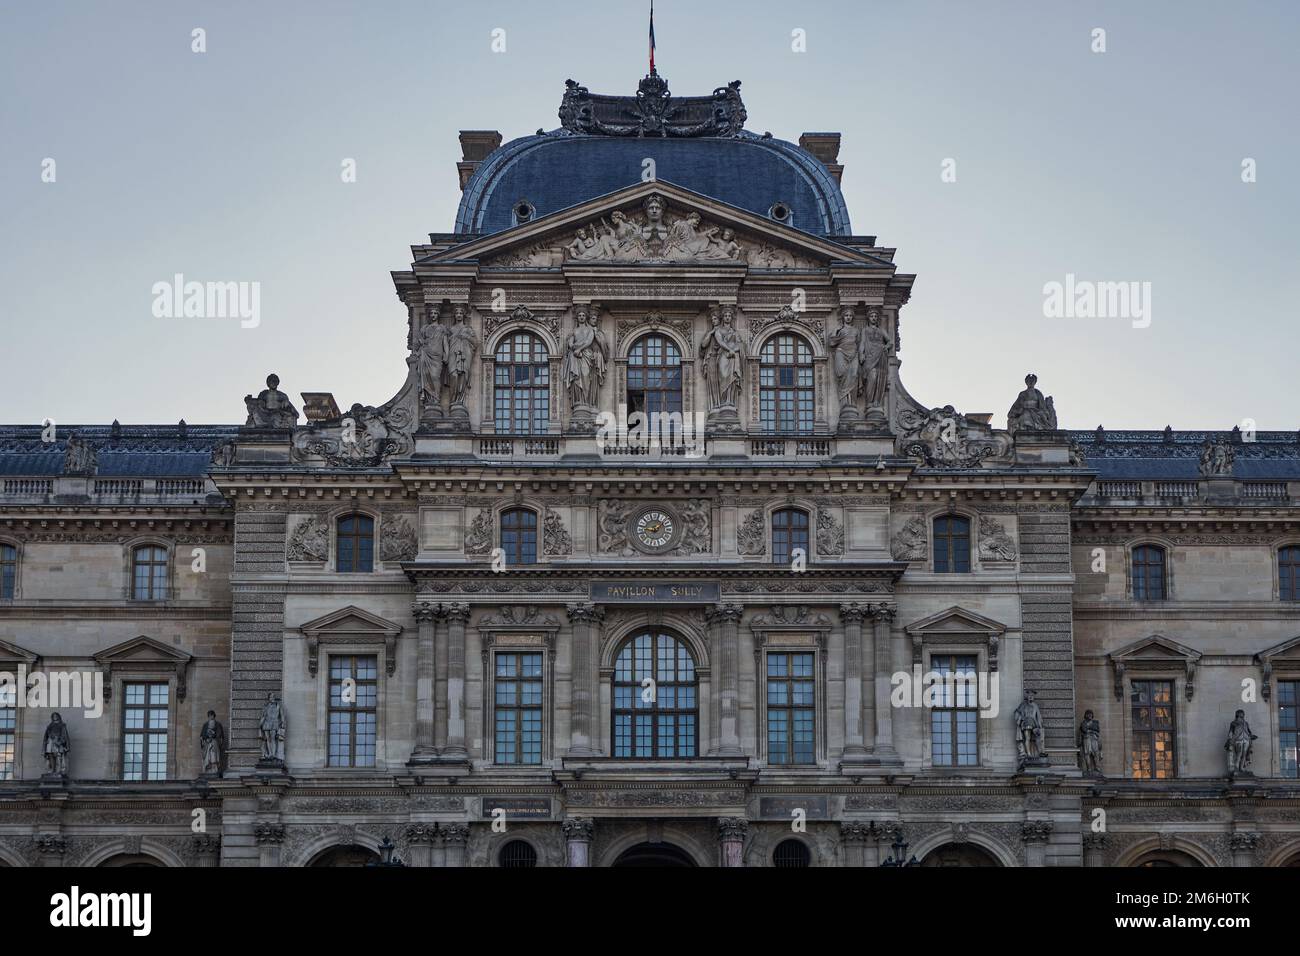 Blick auf den berühmten Louvre bei Sonnenaufgang. Das meistbesuchte Museum weltweit und eine der wichtigsten Touristenattraktionen von Paris, Fr Stockfoto